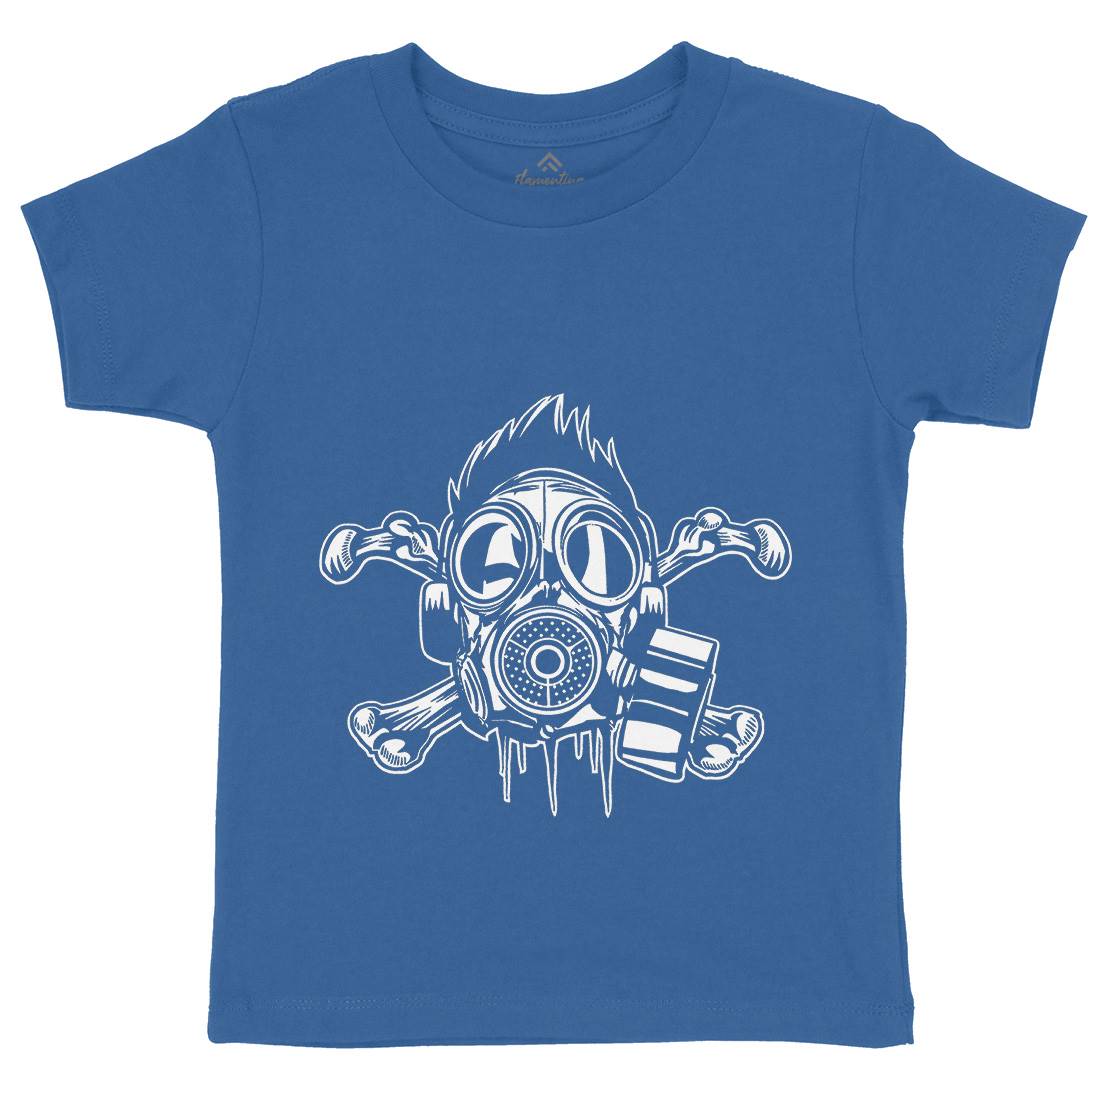 Cross Bones Kids Crew Neck T-Shirt Horror A518